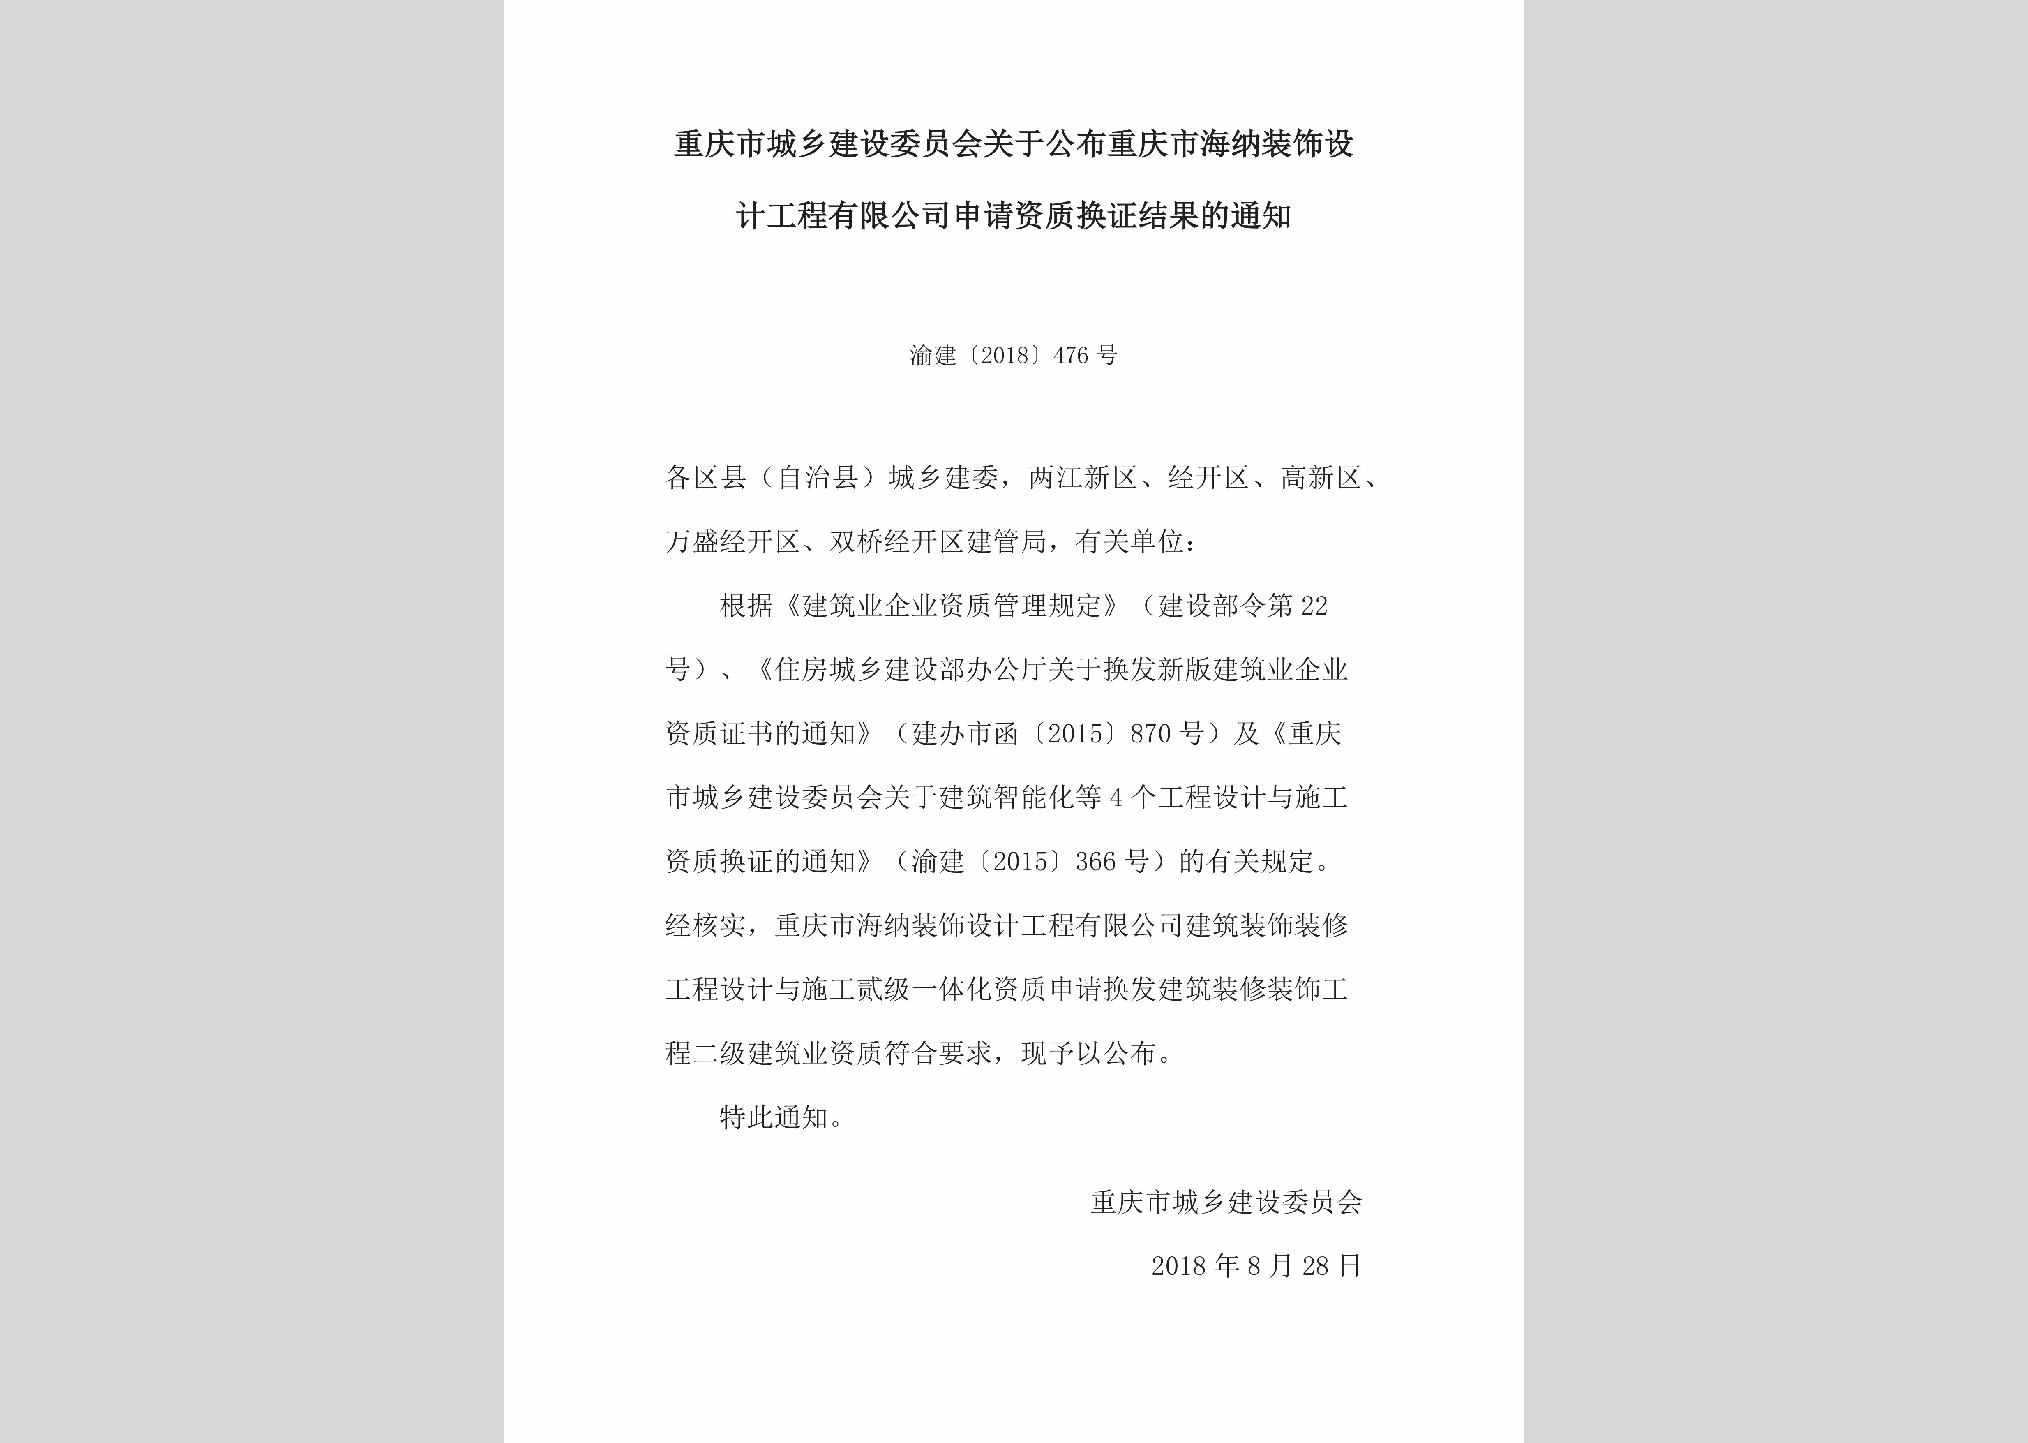 渝建[2018]476号：关于公布重庆市海纳装饰设计工程有限公司申请资质换证结果的通知